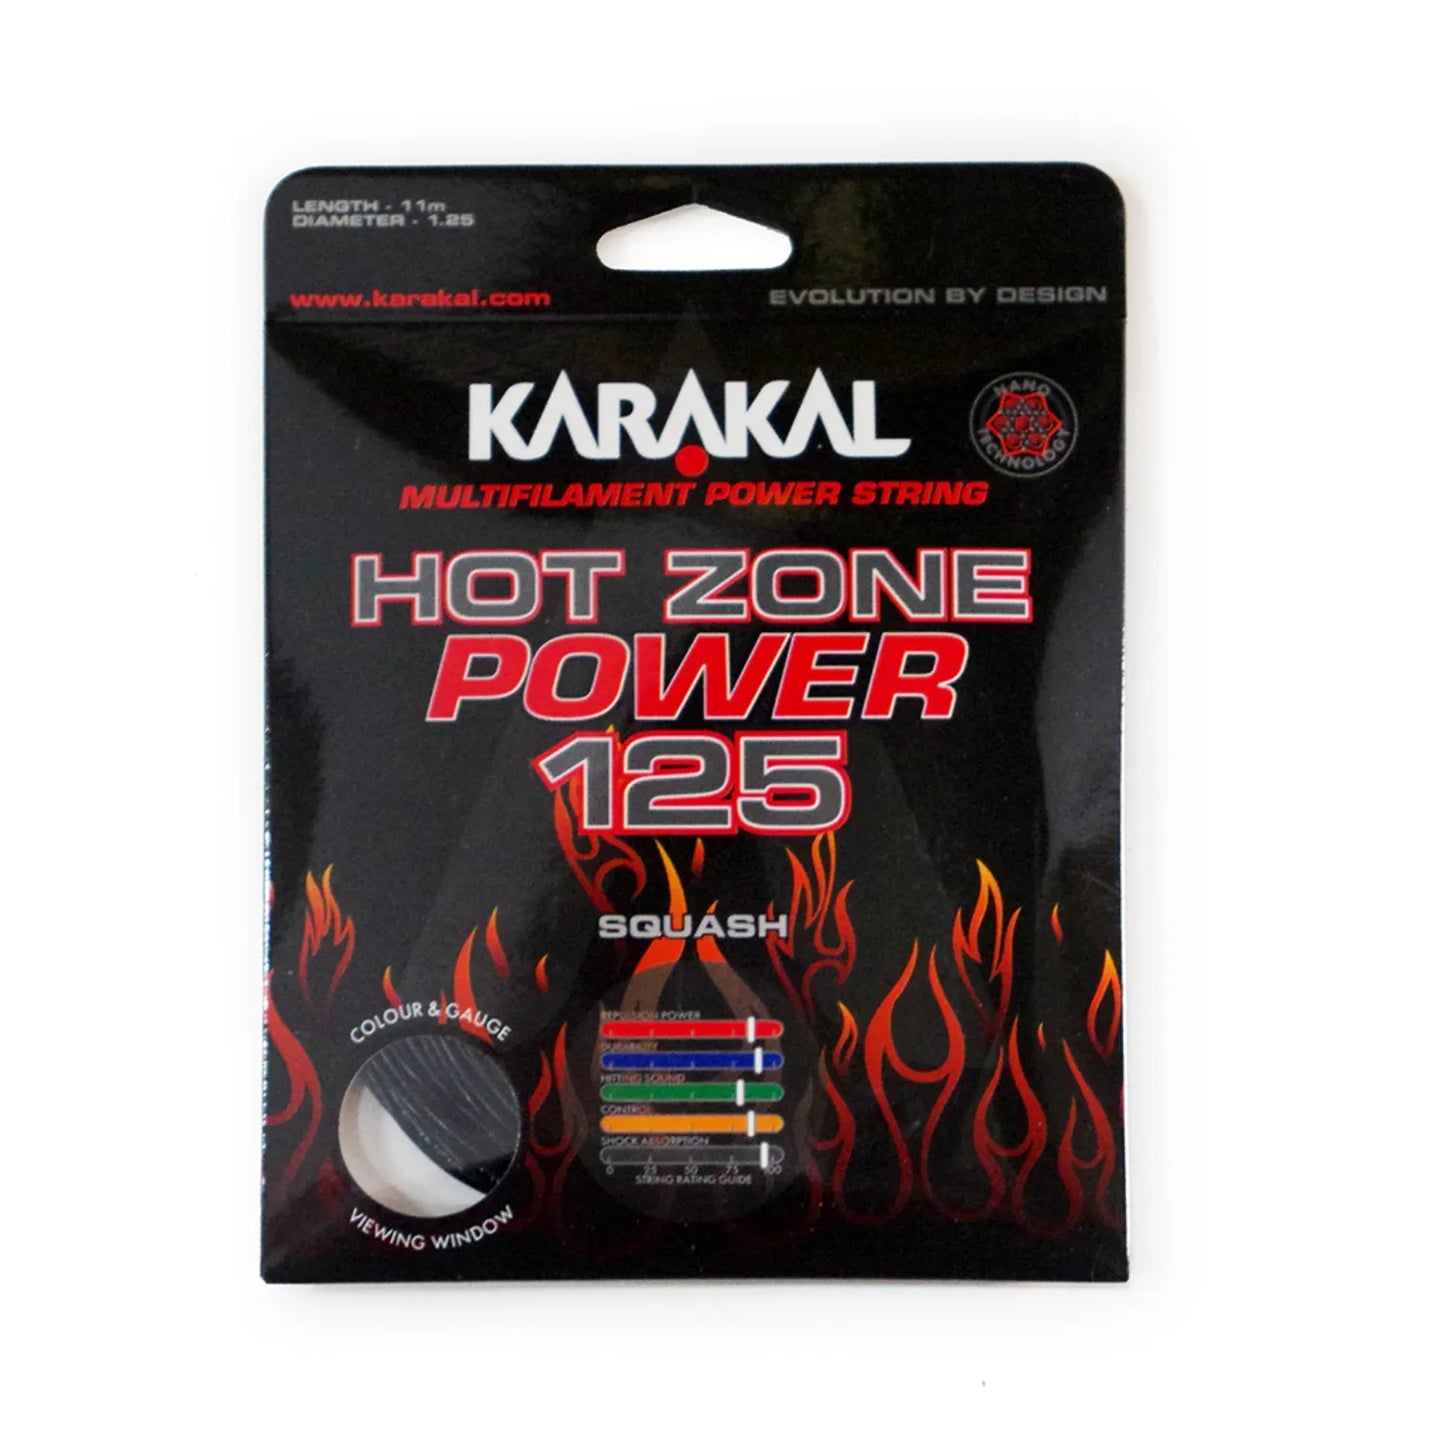 Karakal Hot Zone Power 125 Squash String